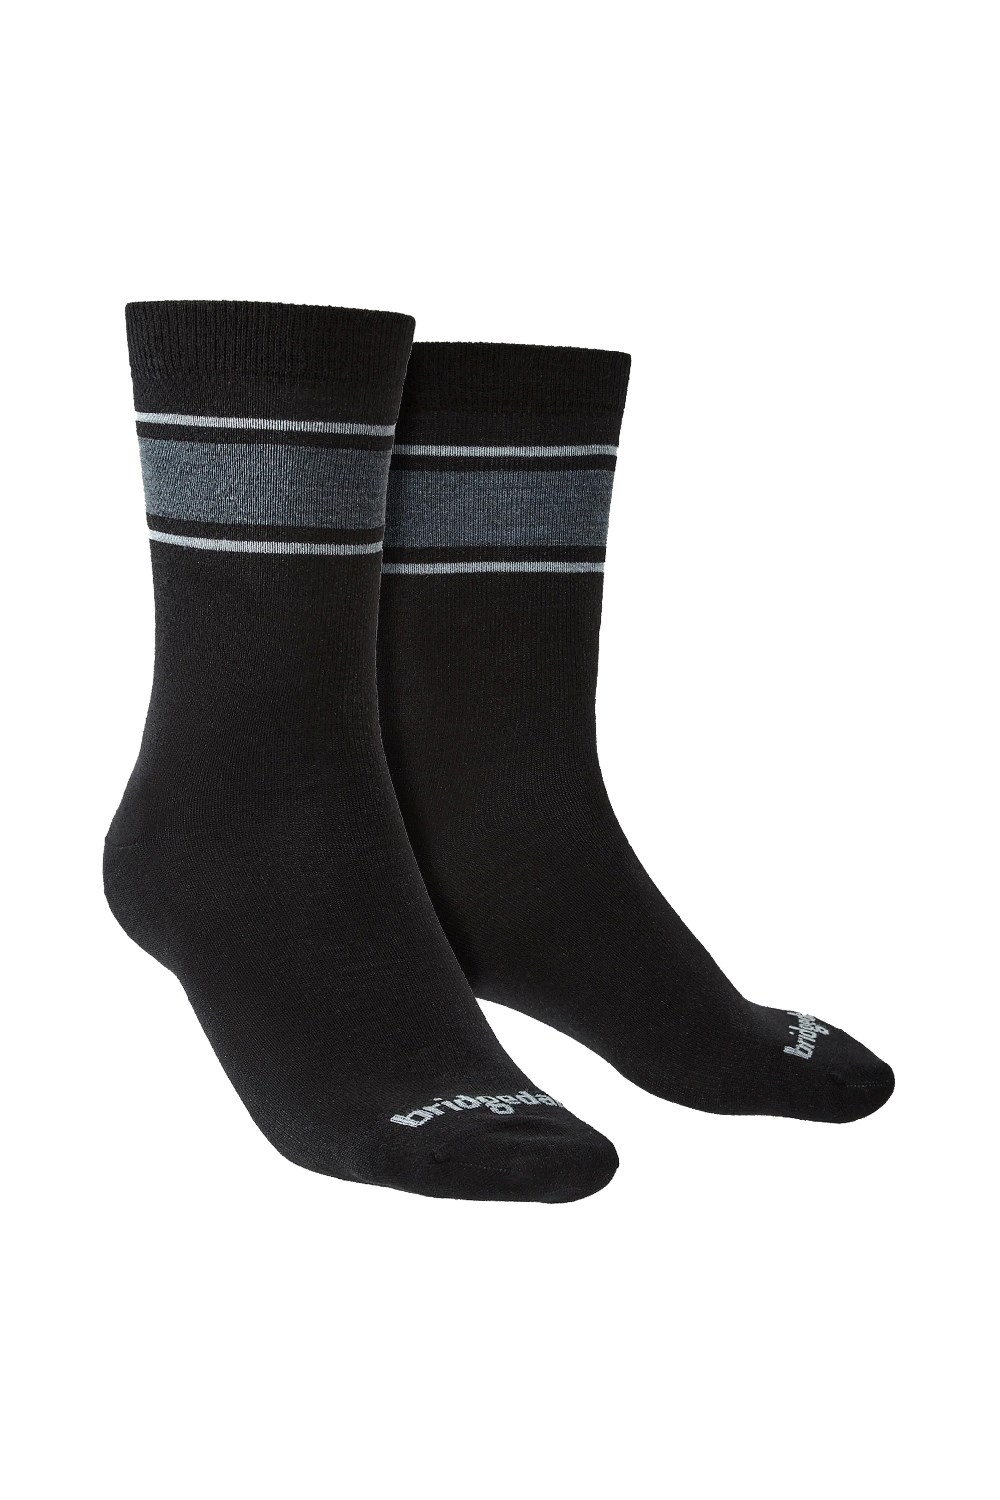 Mens Liner Base Layer Merino Boot Socks -